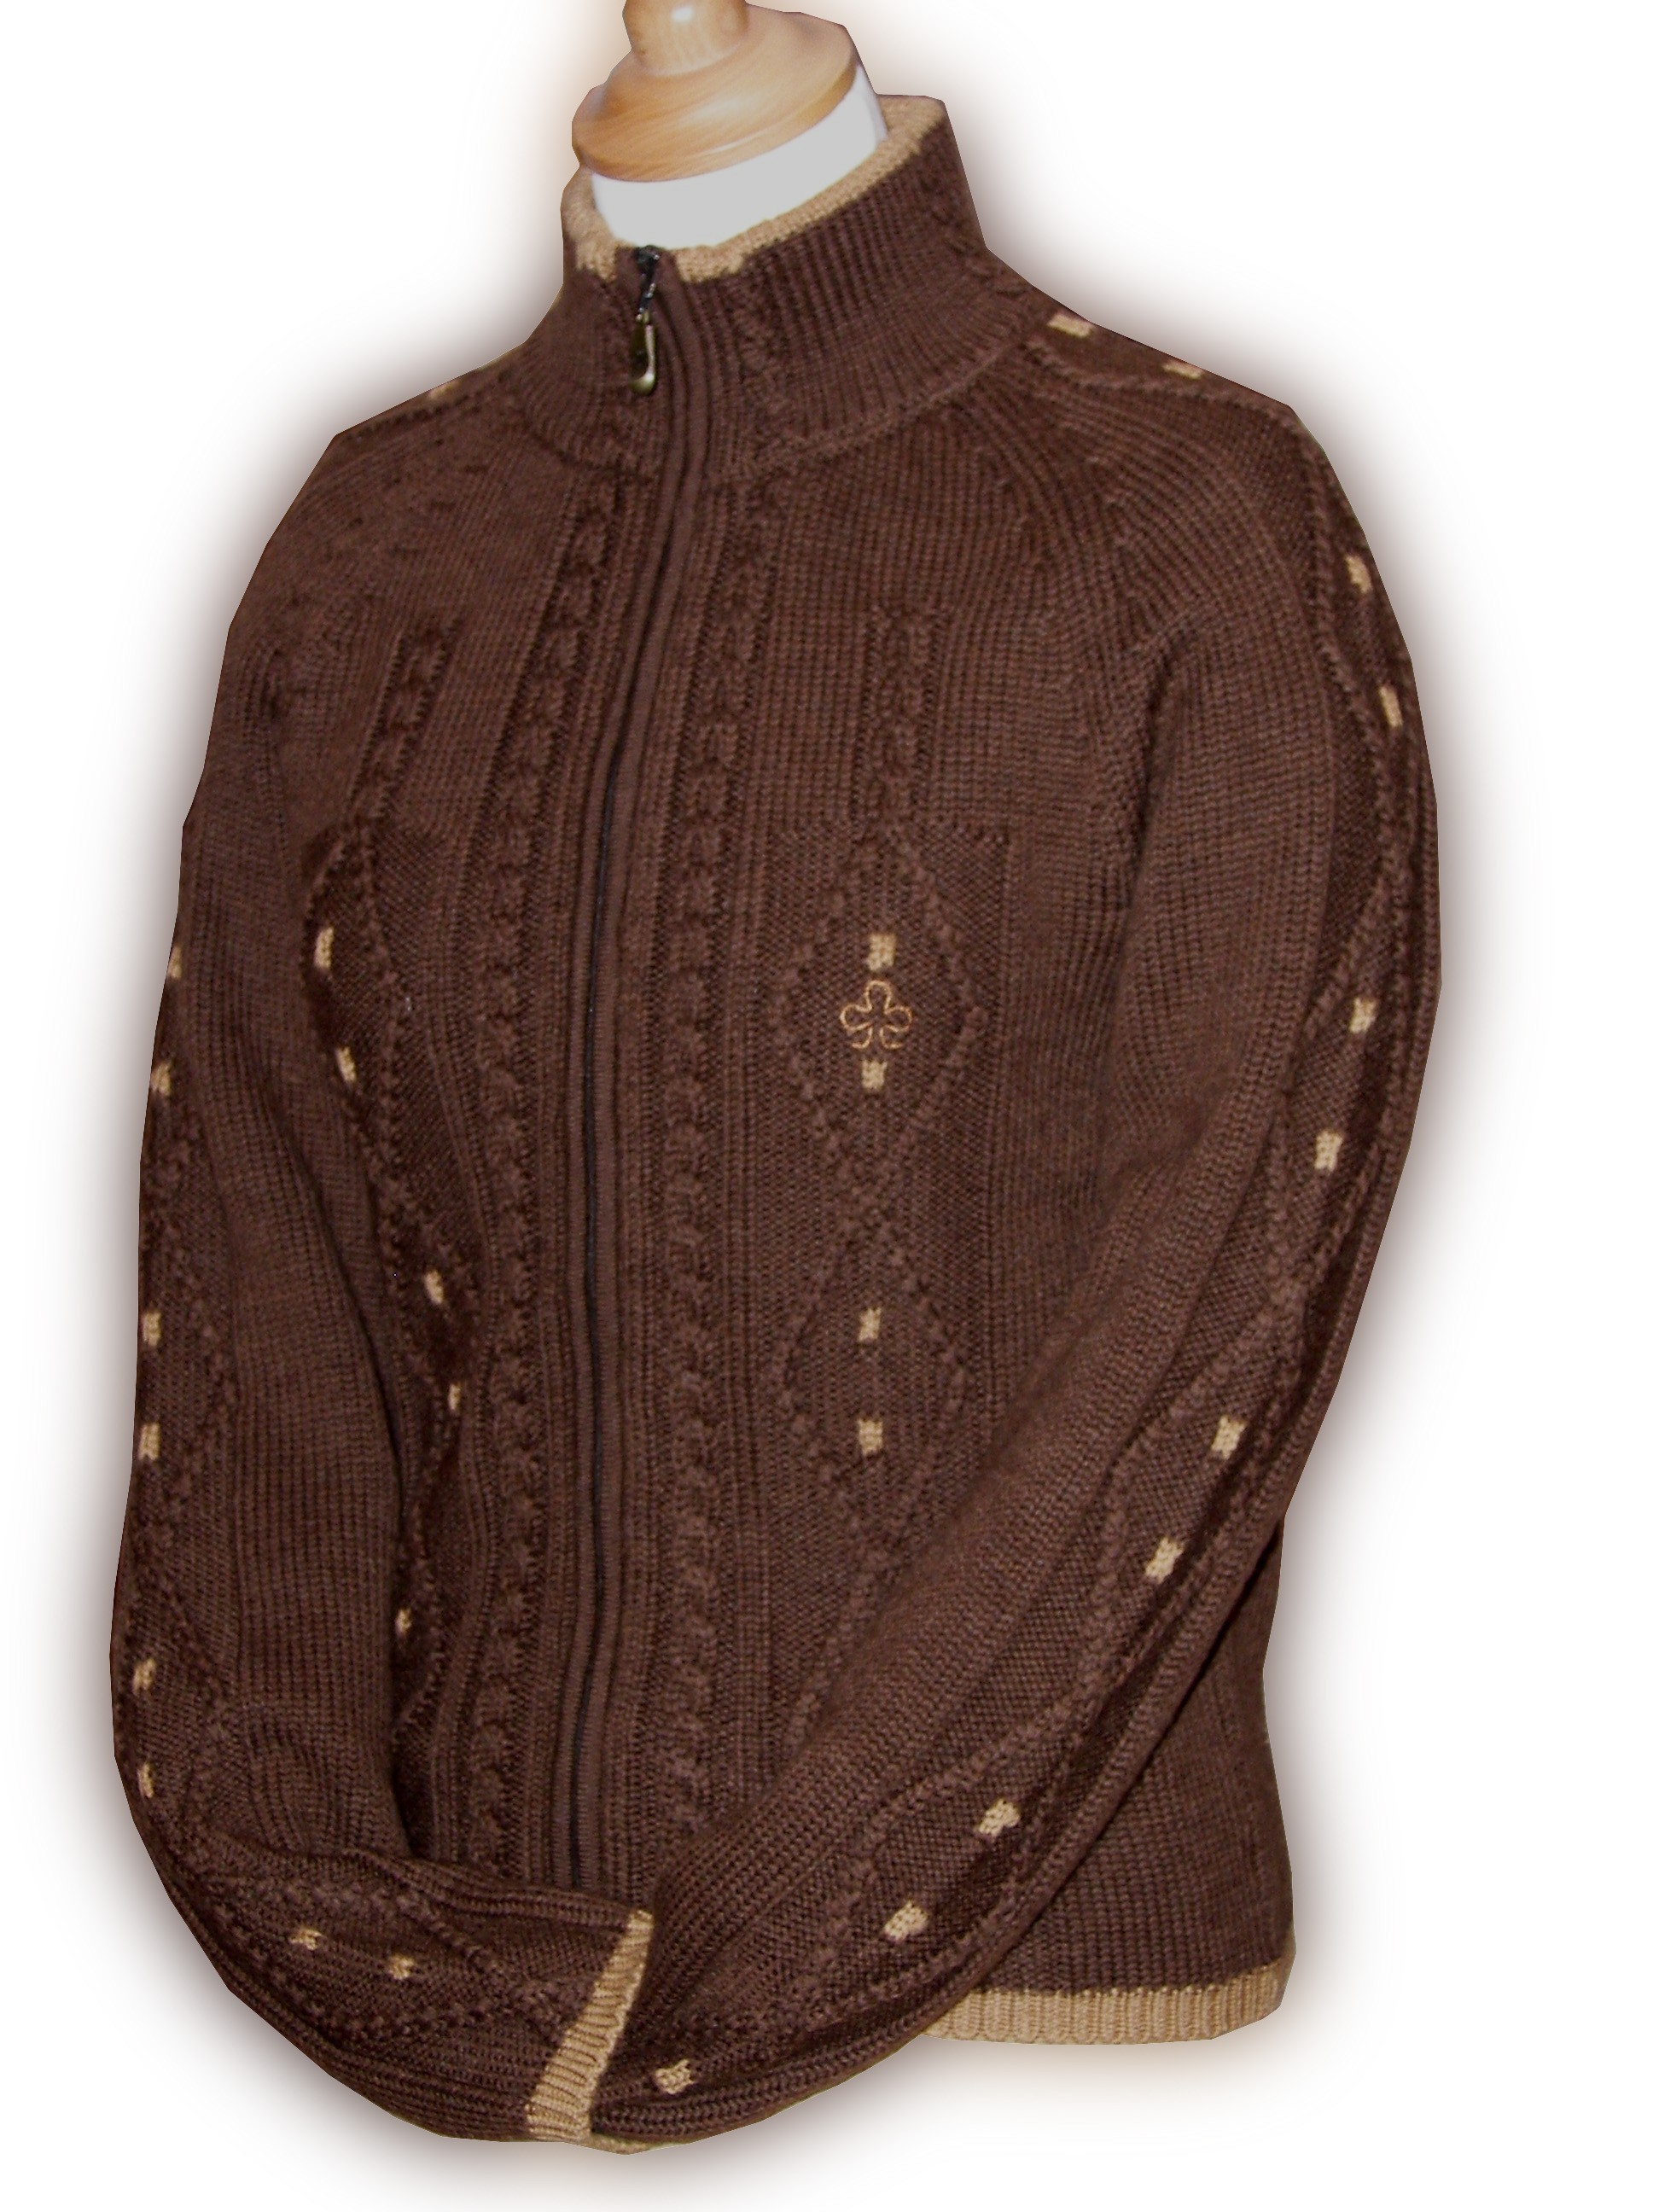 Gant femme tricoté cuir/laine - Charles de Nevel